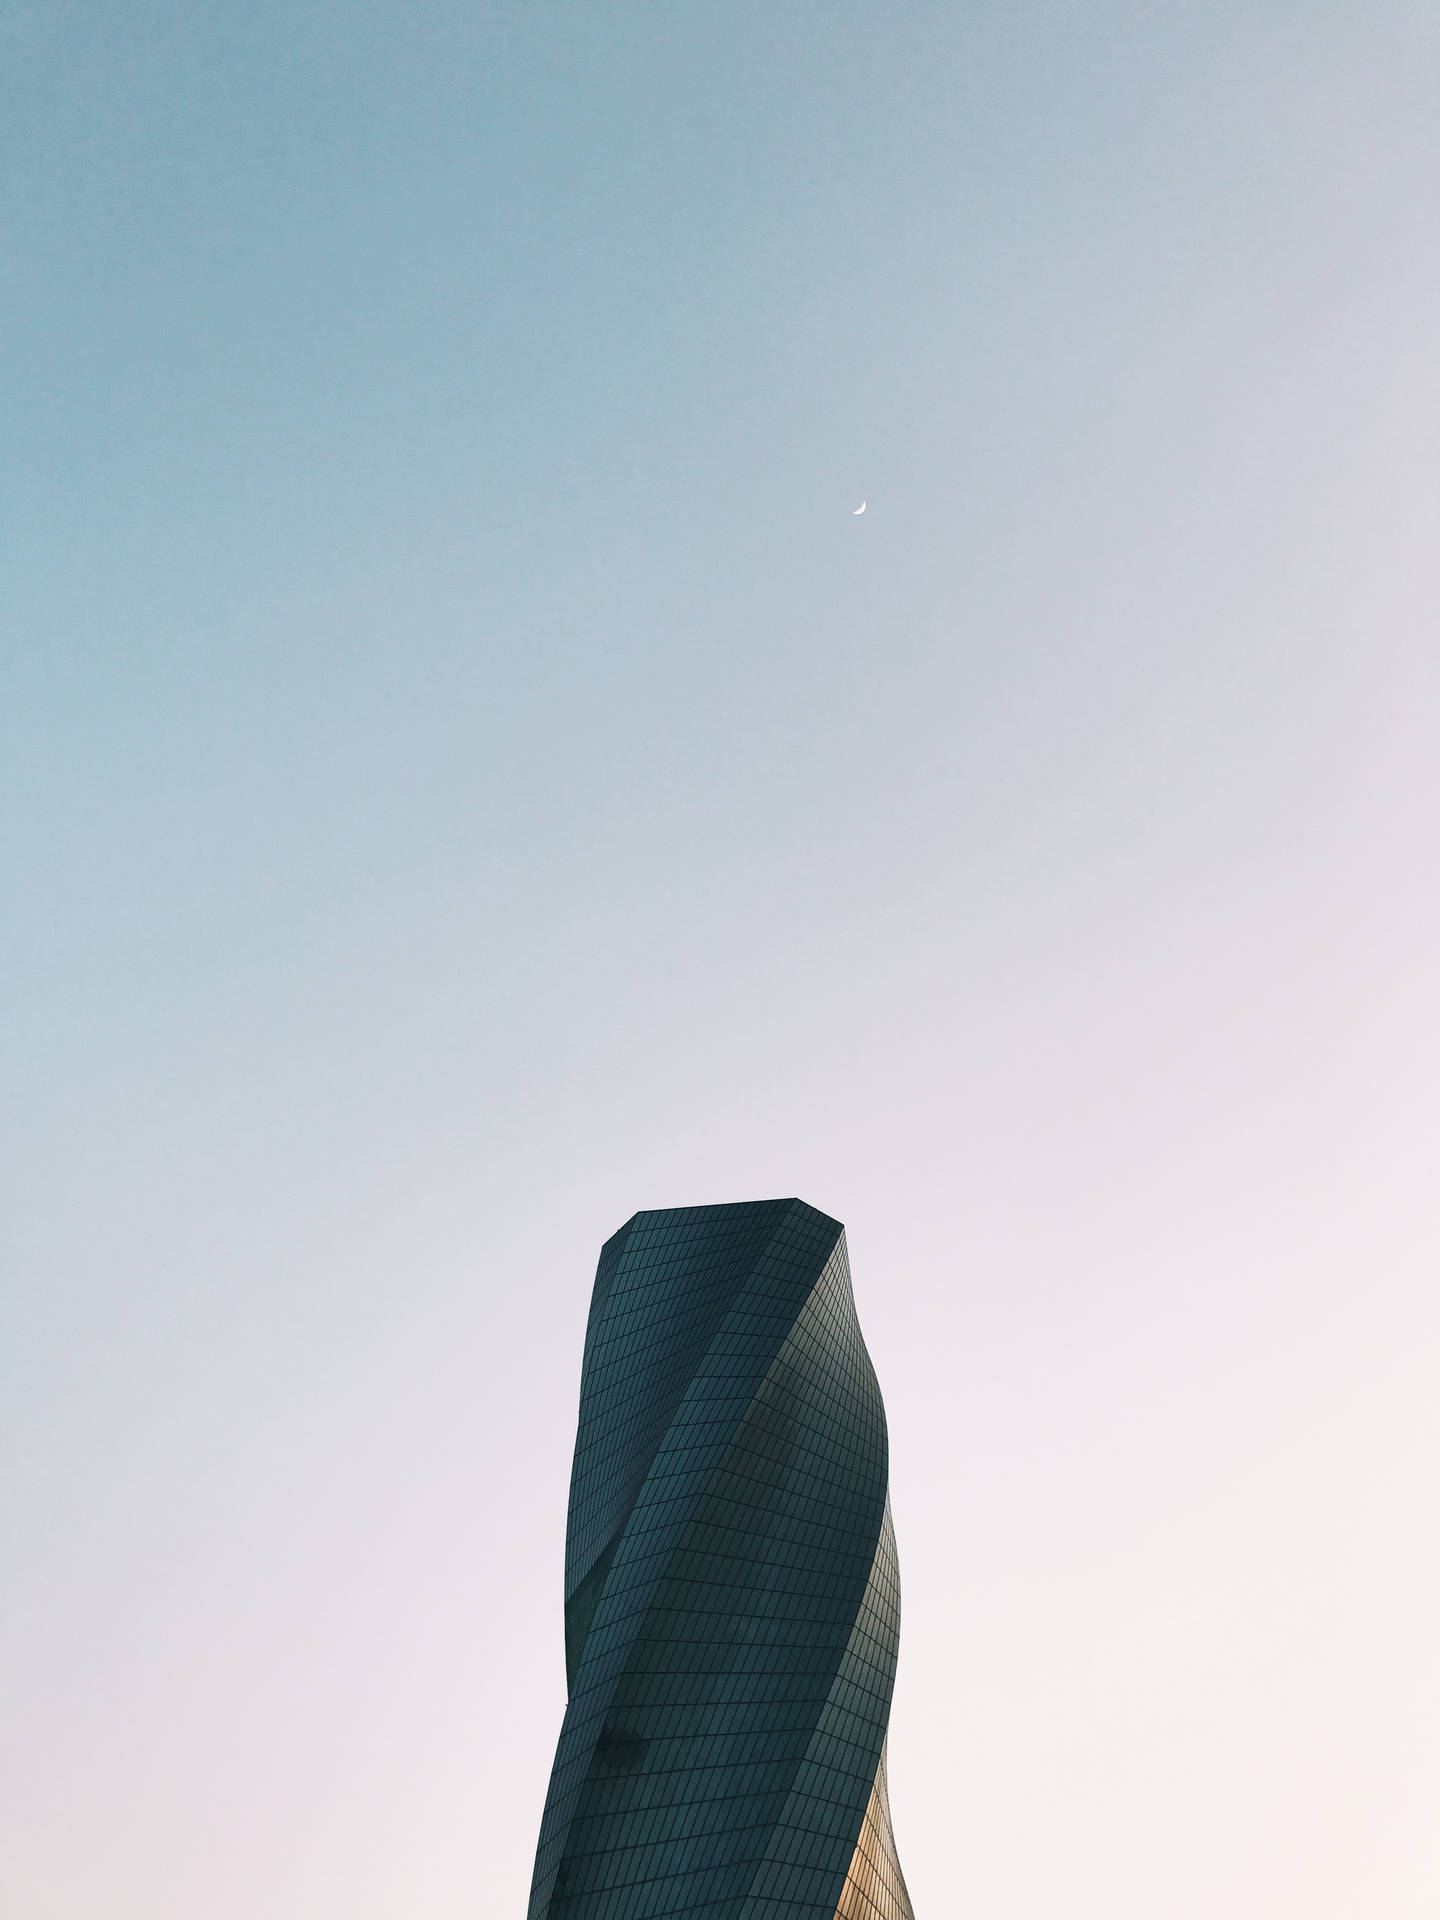 Consejopara El Fondo Del Edificio De La Torre Unida De Bahréin Fondo de pantalla